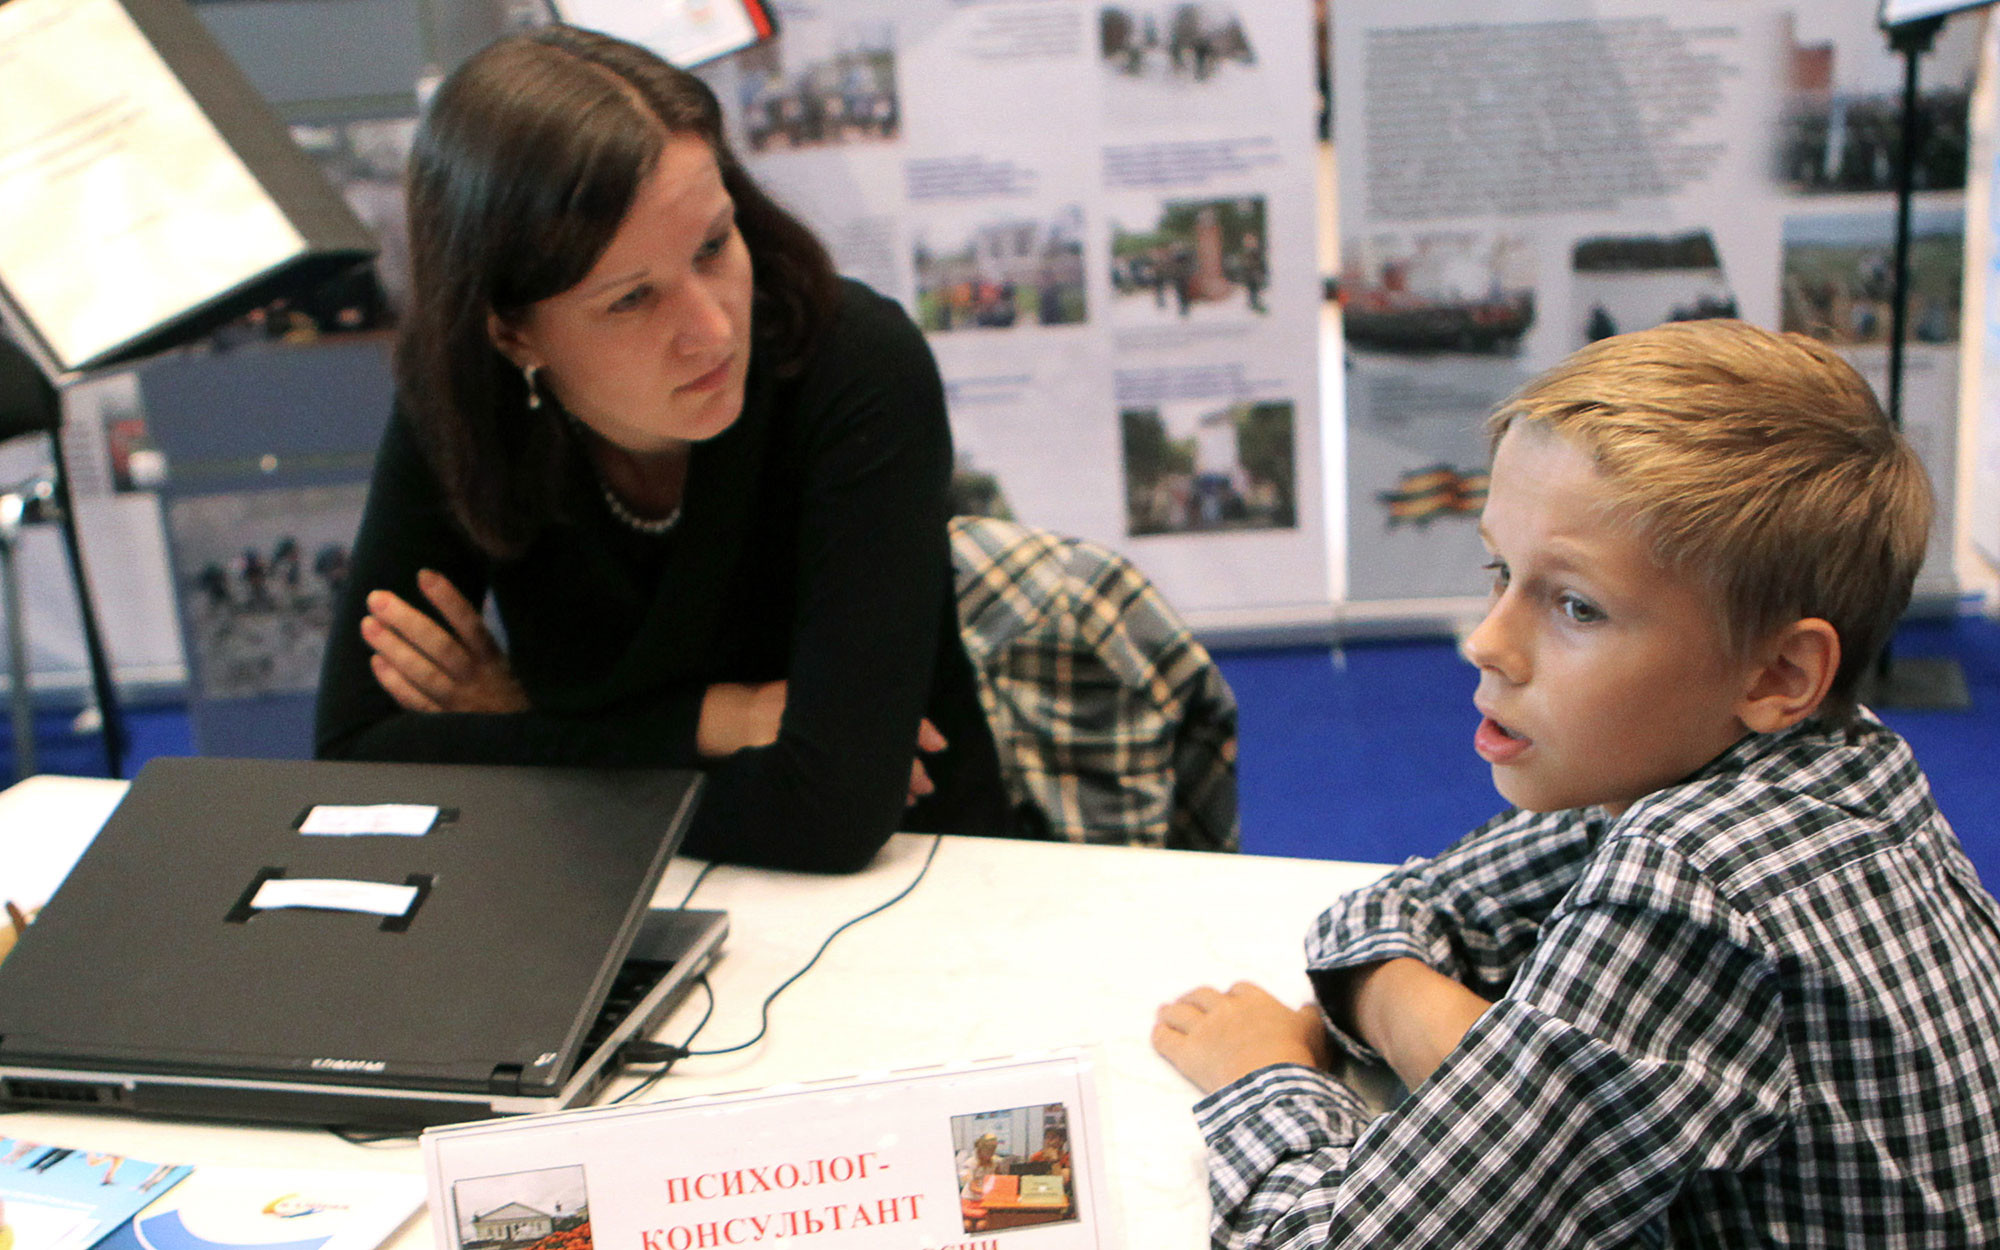 Психолог-консультант беседует с мальчиком на выставке. Фото: ©РИА Новости / Владимир Песня